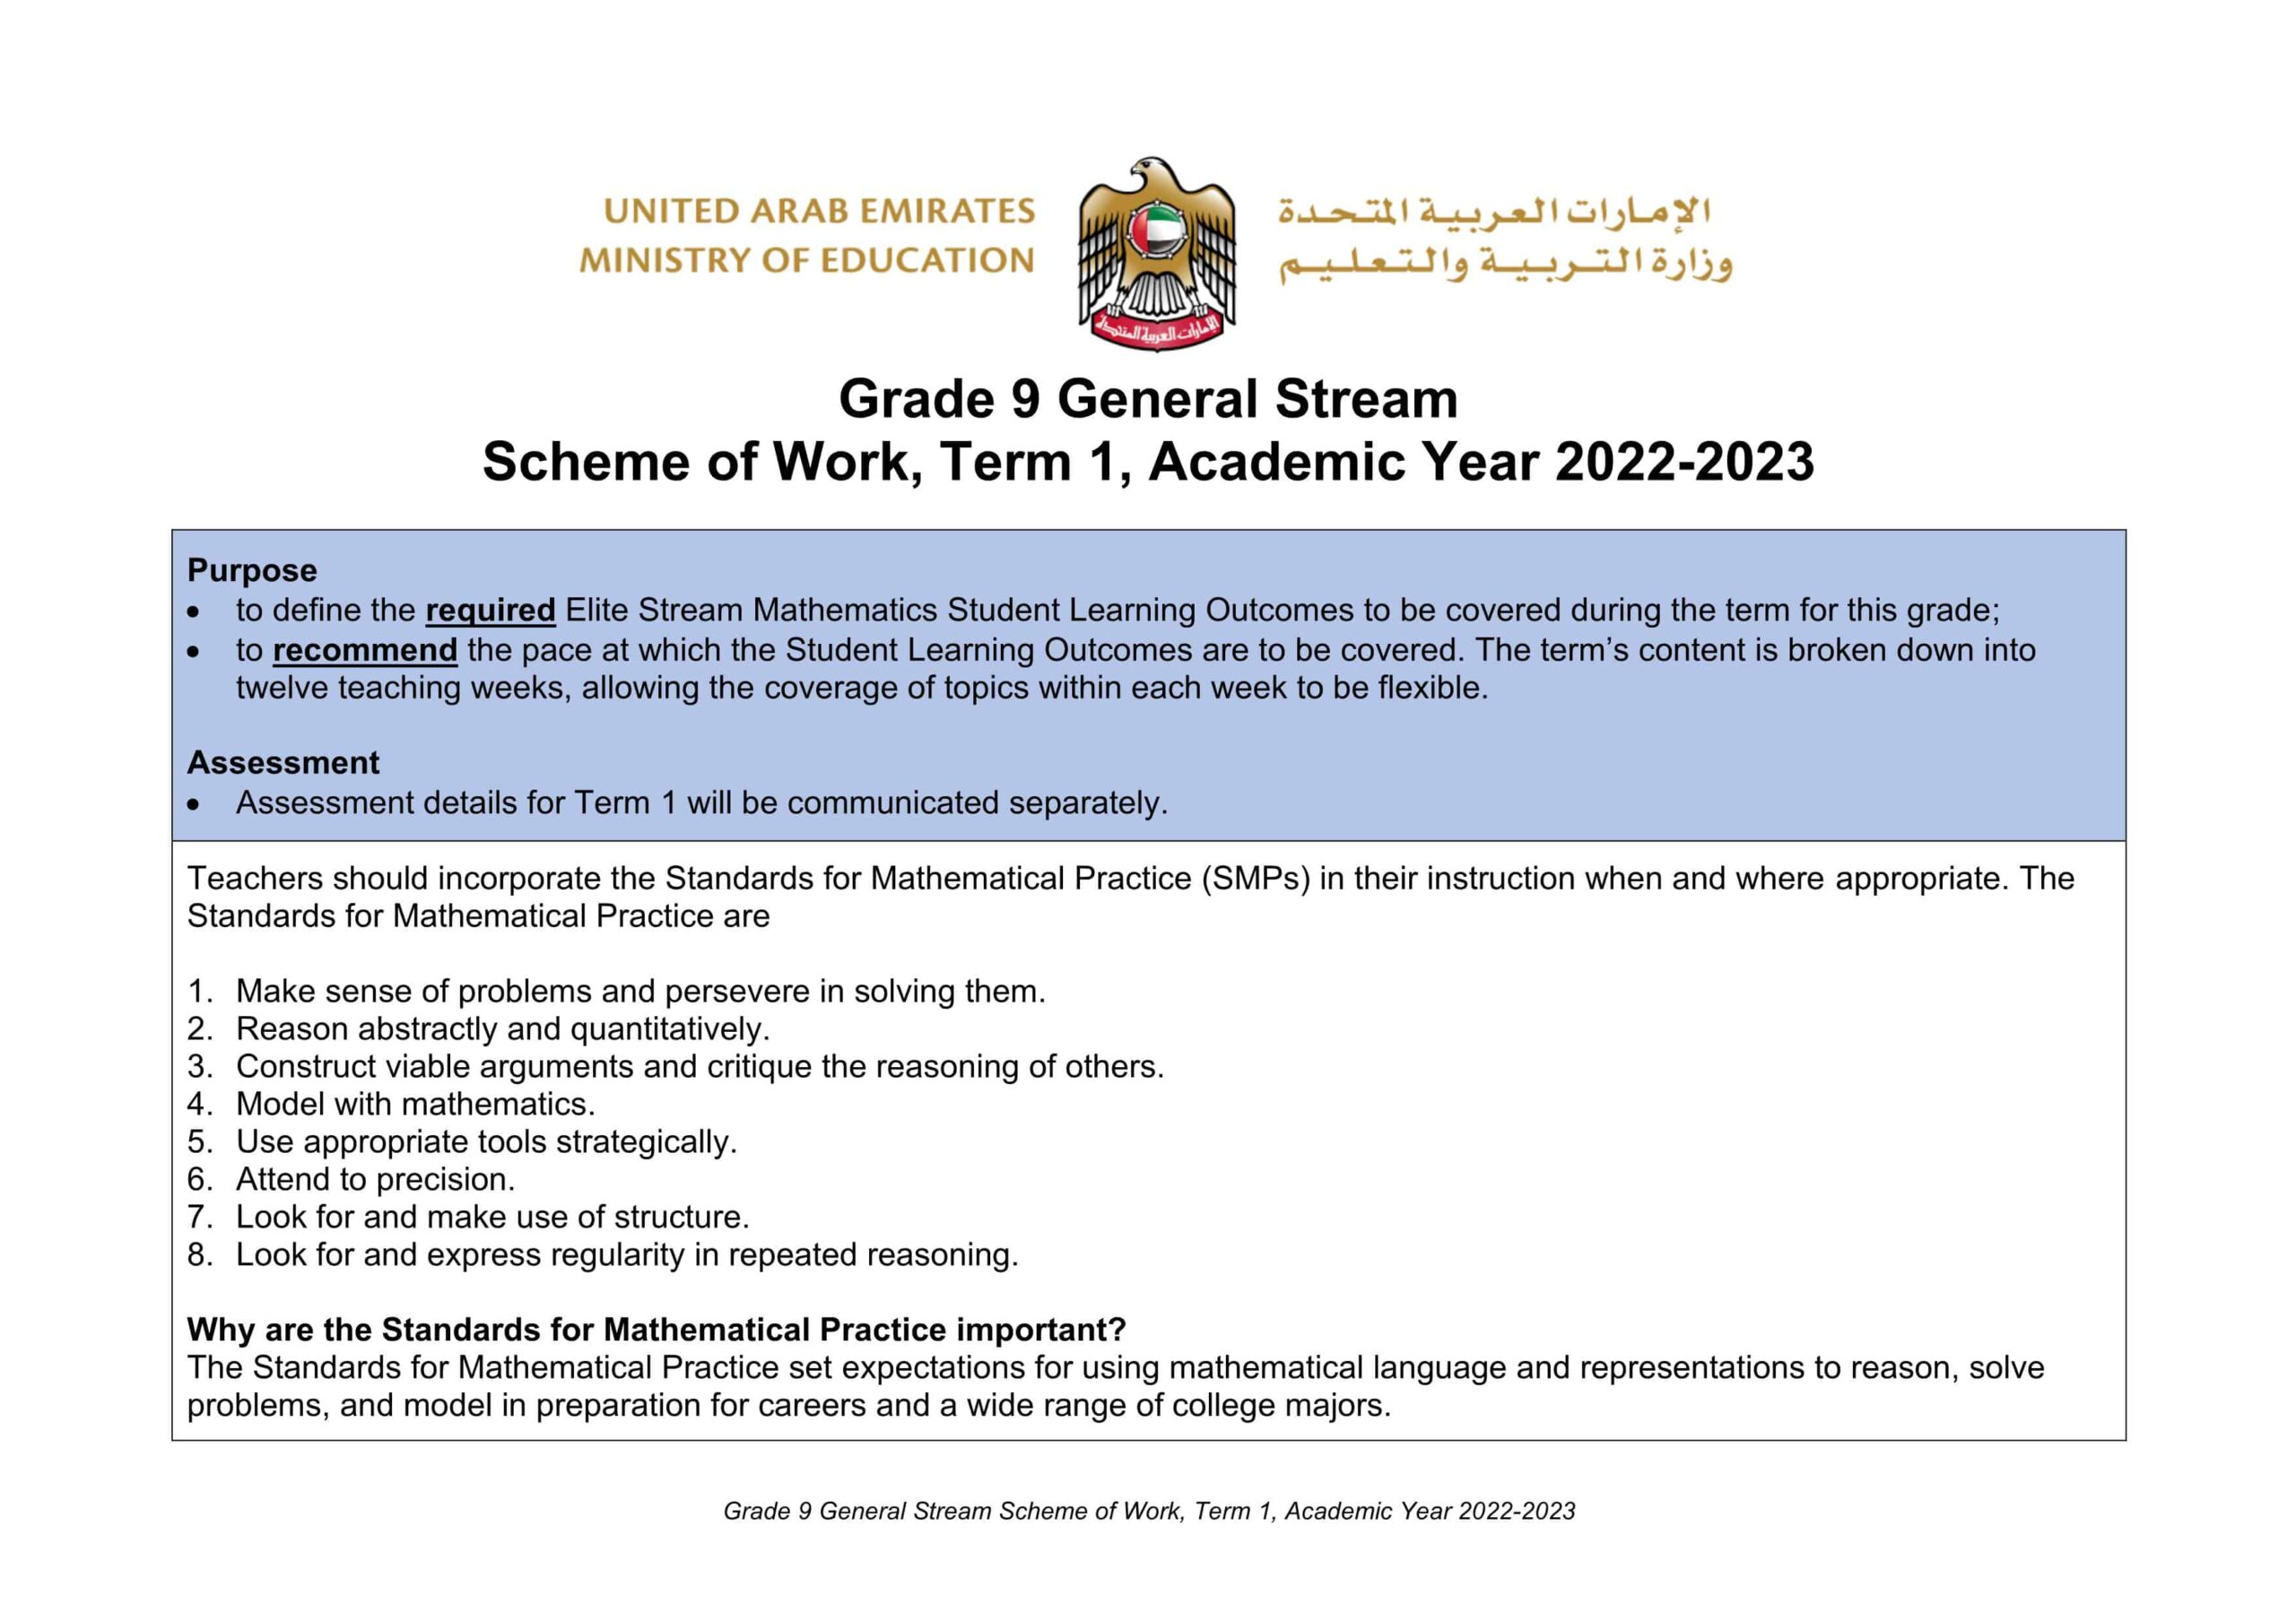 الخطة الفصلية Scheme of Work الرياضيات المتكاملة الصف التاسع Reveal الفصل الدراسي الأول 2022-2023